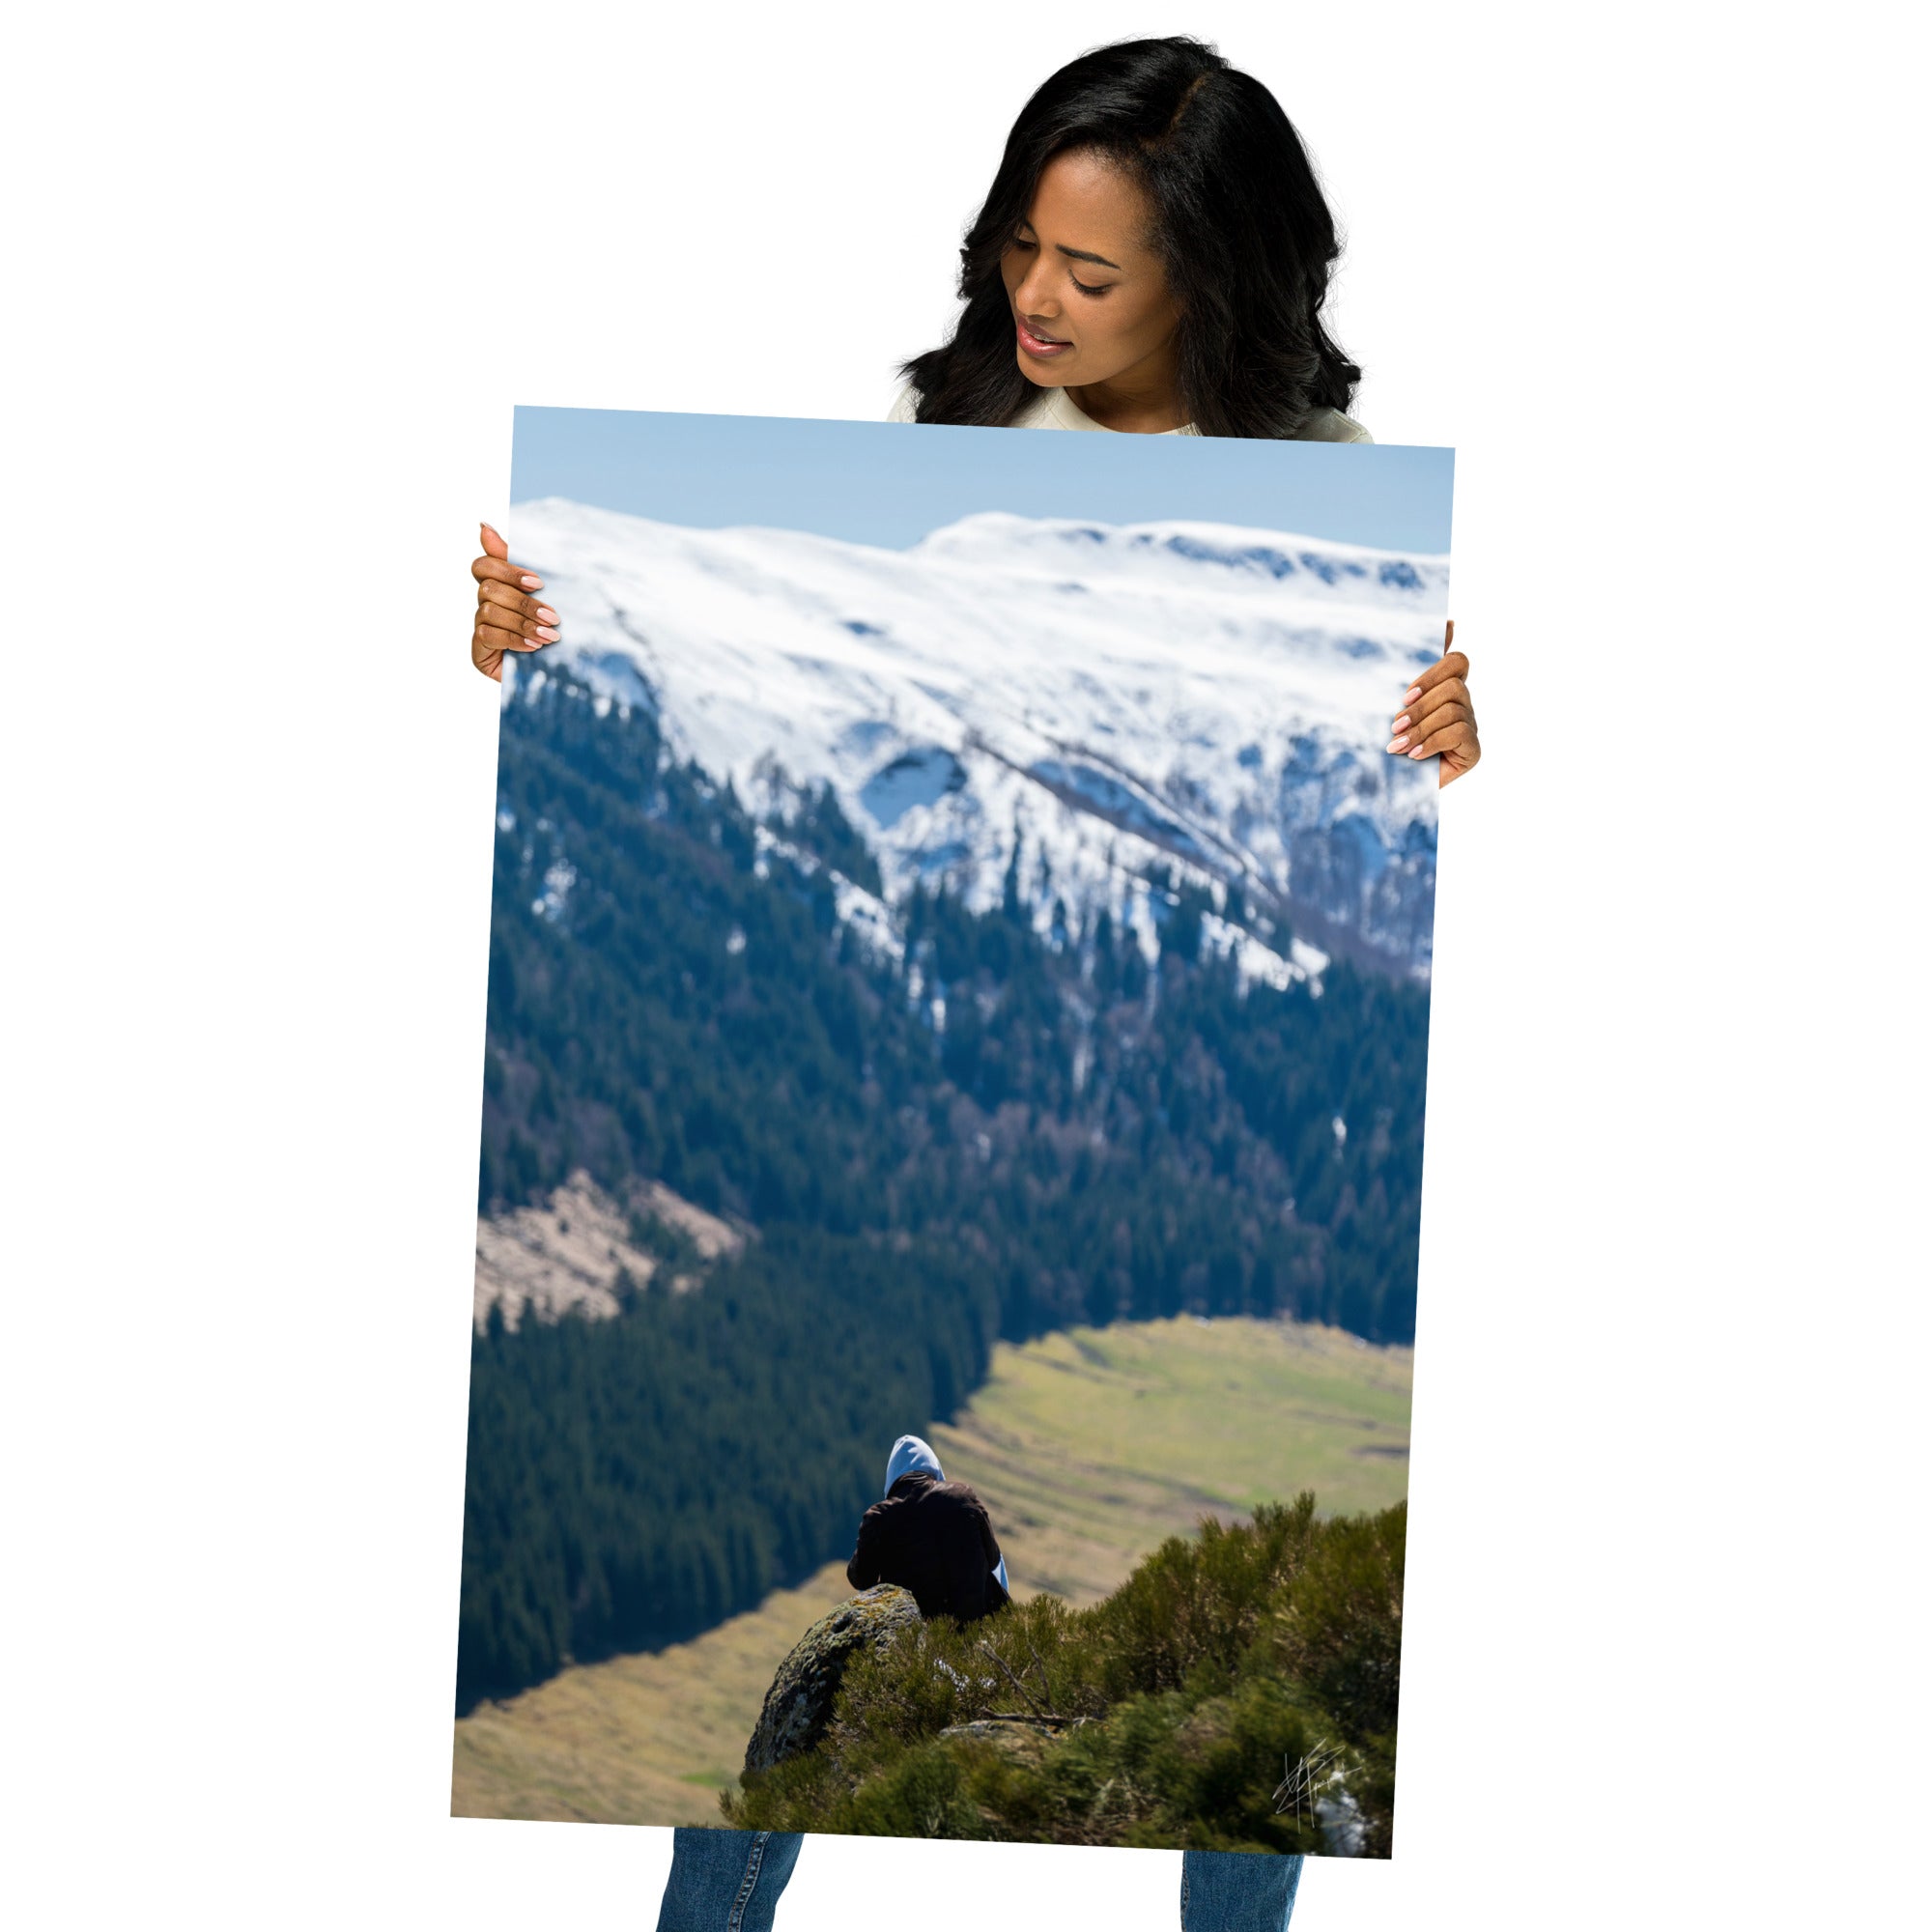 Figure en méditation sur une montagne du Cantal, vaste paysage en arrière-plan.